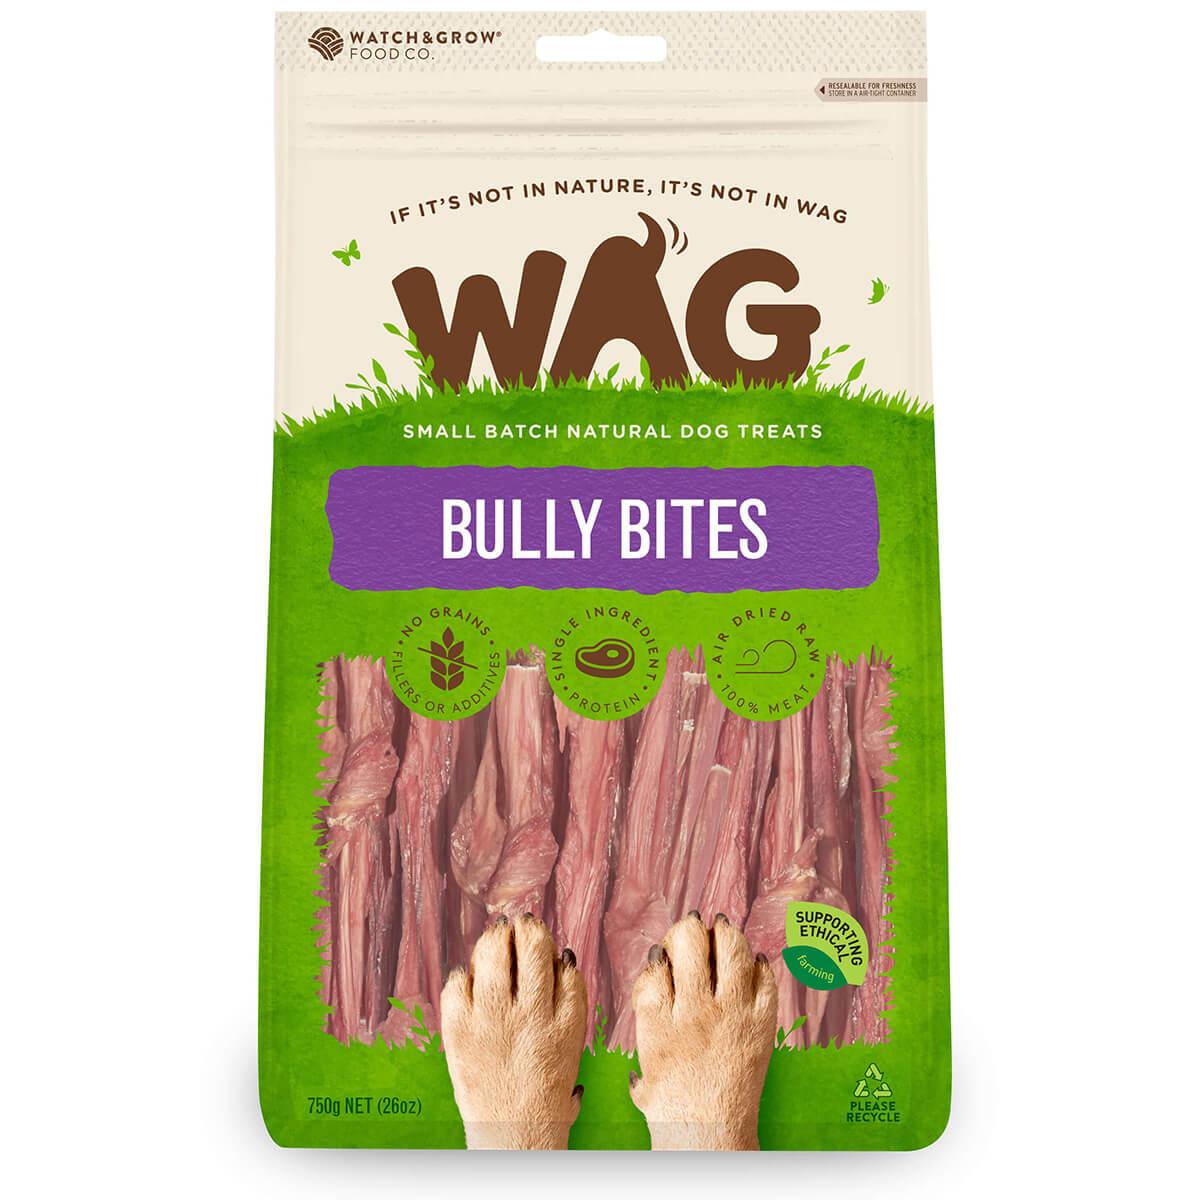 WAG Bully Bites Dog Treats